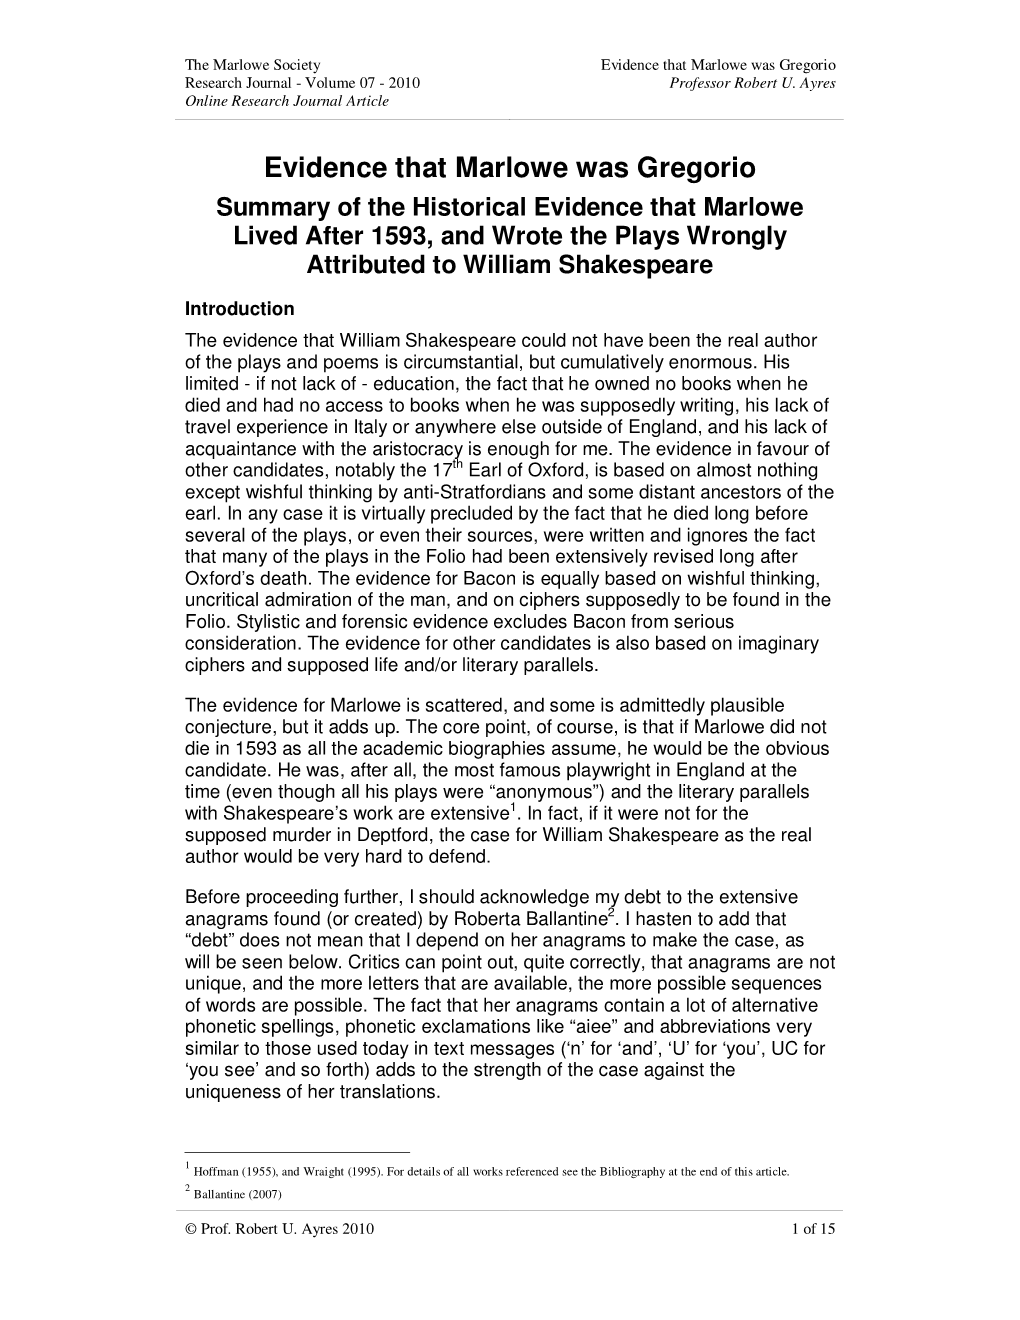 Evidence That Marlowe Was Gregorio Research Journal - Volume 07 - 2010 Professor Robert U